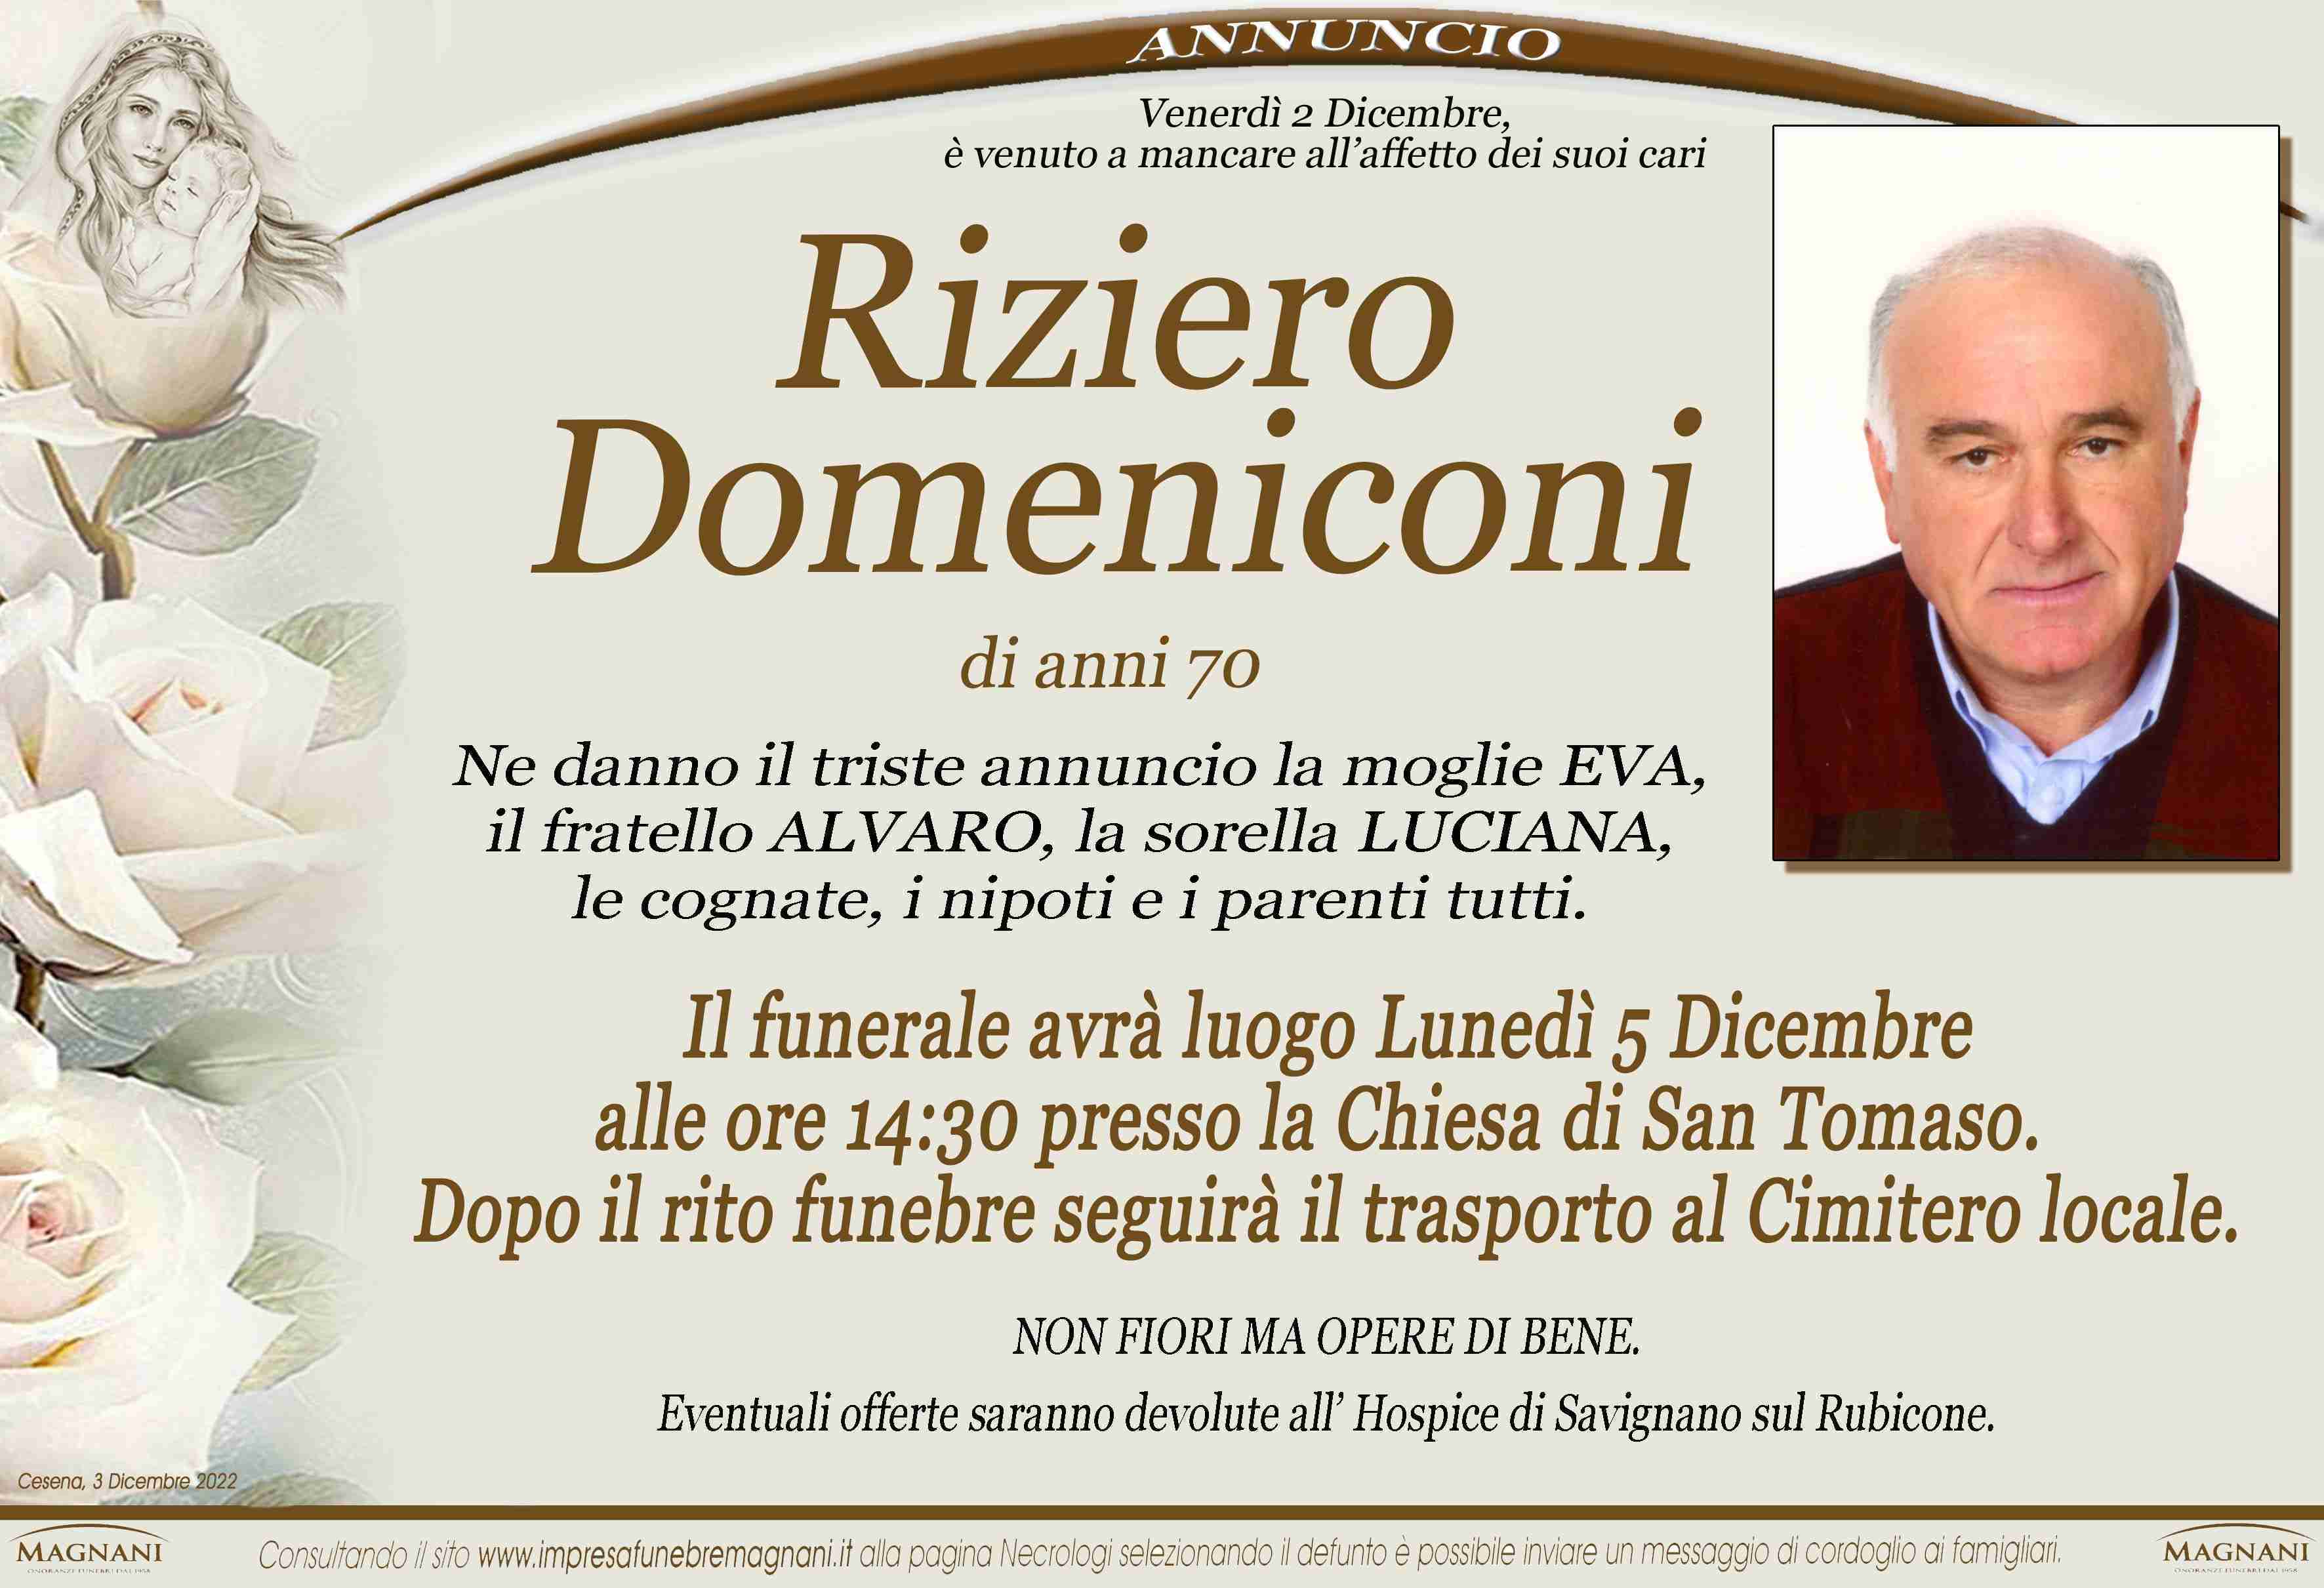 Riziero Domeniconi